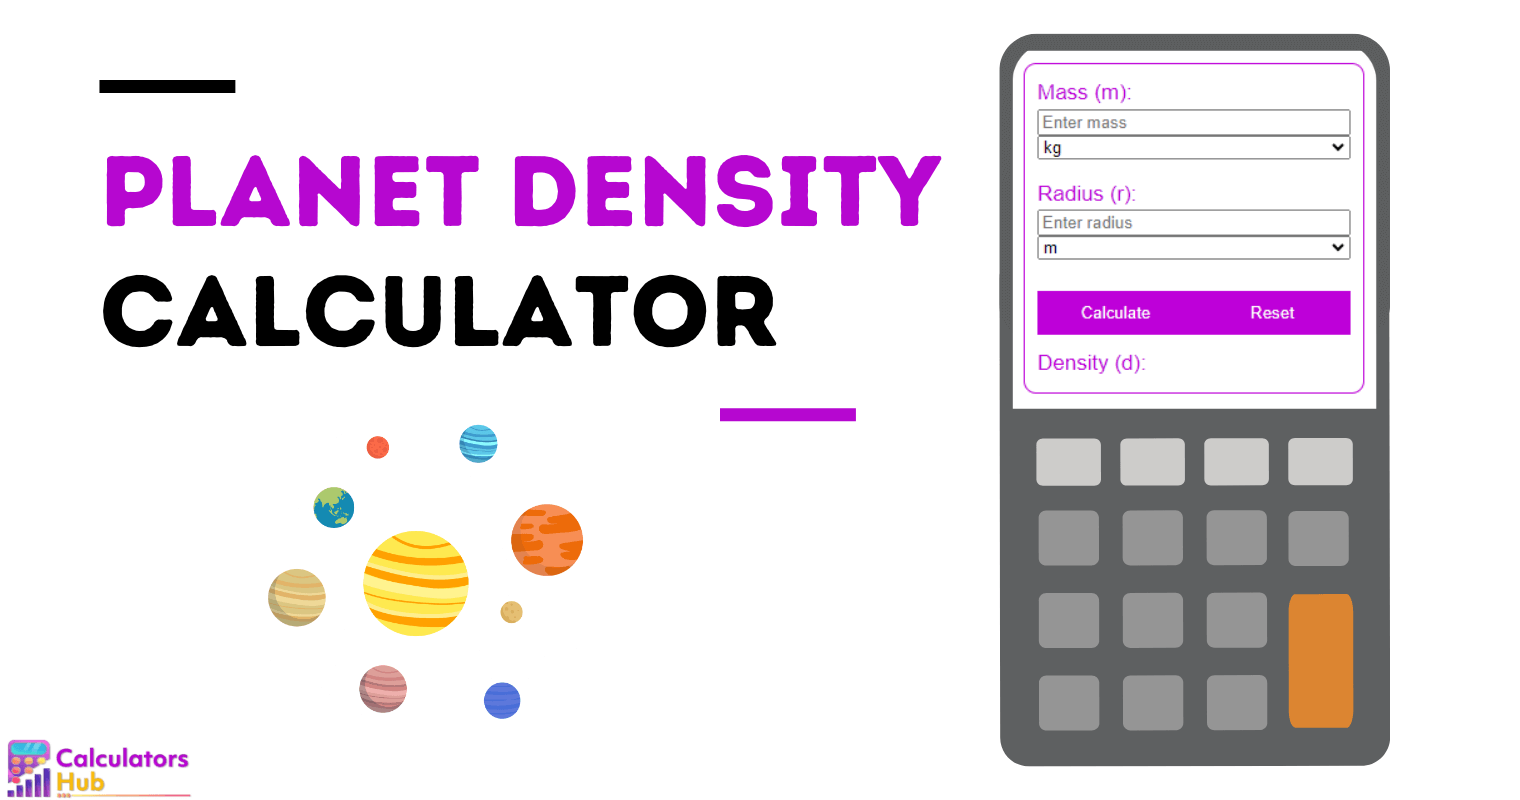 Calculateur de densité planétaire